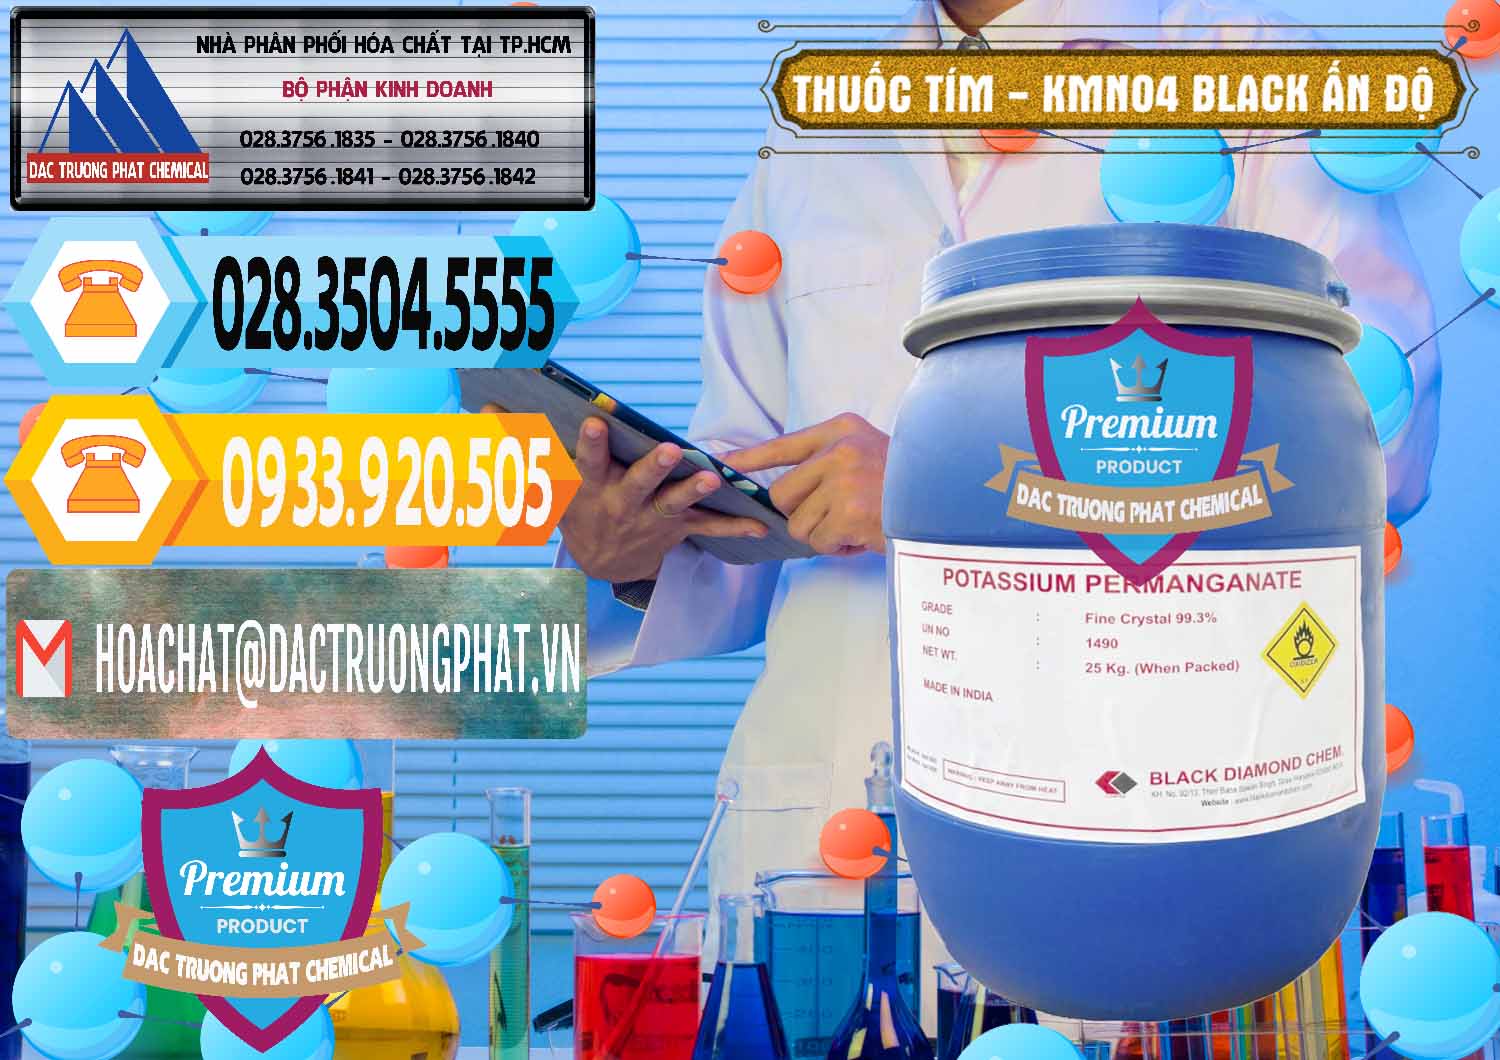 Đơn vị bán _ cung ứng Thuốc Tím - KMNO4 Black Diamond Ấn Độ India - 0414 - Nơi chuyên phân phối _ bán hóa chất tại TP.HCM - hoachattayrua.net